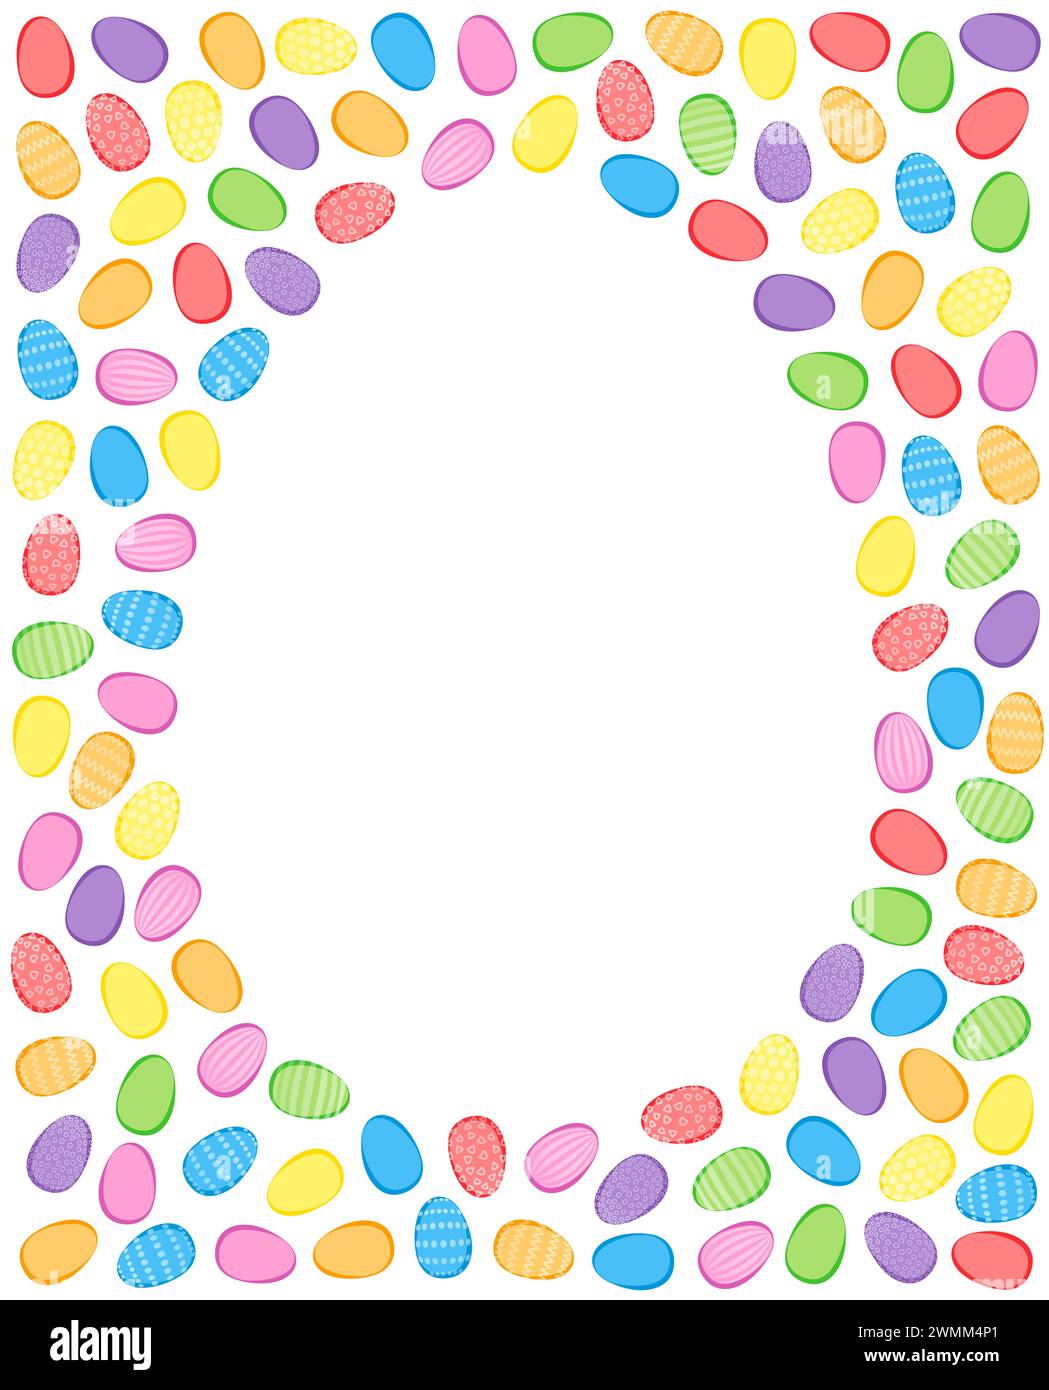 Farbenfroher Hintergrund für Ostereier. Zahlreiche ostereier, farbig und mit dekorativen Mustern, gekreuzt und zufällig um leere Eierform angeordnet. Stockfoto